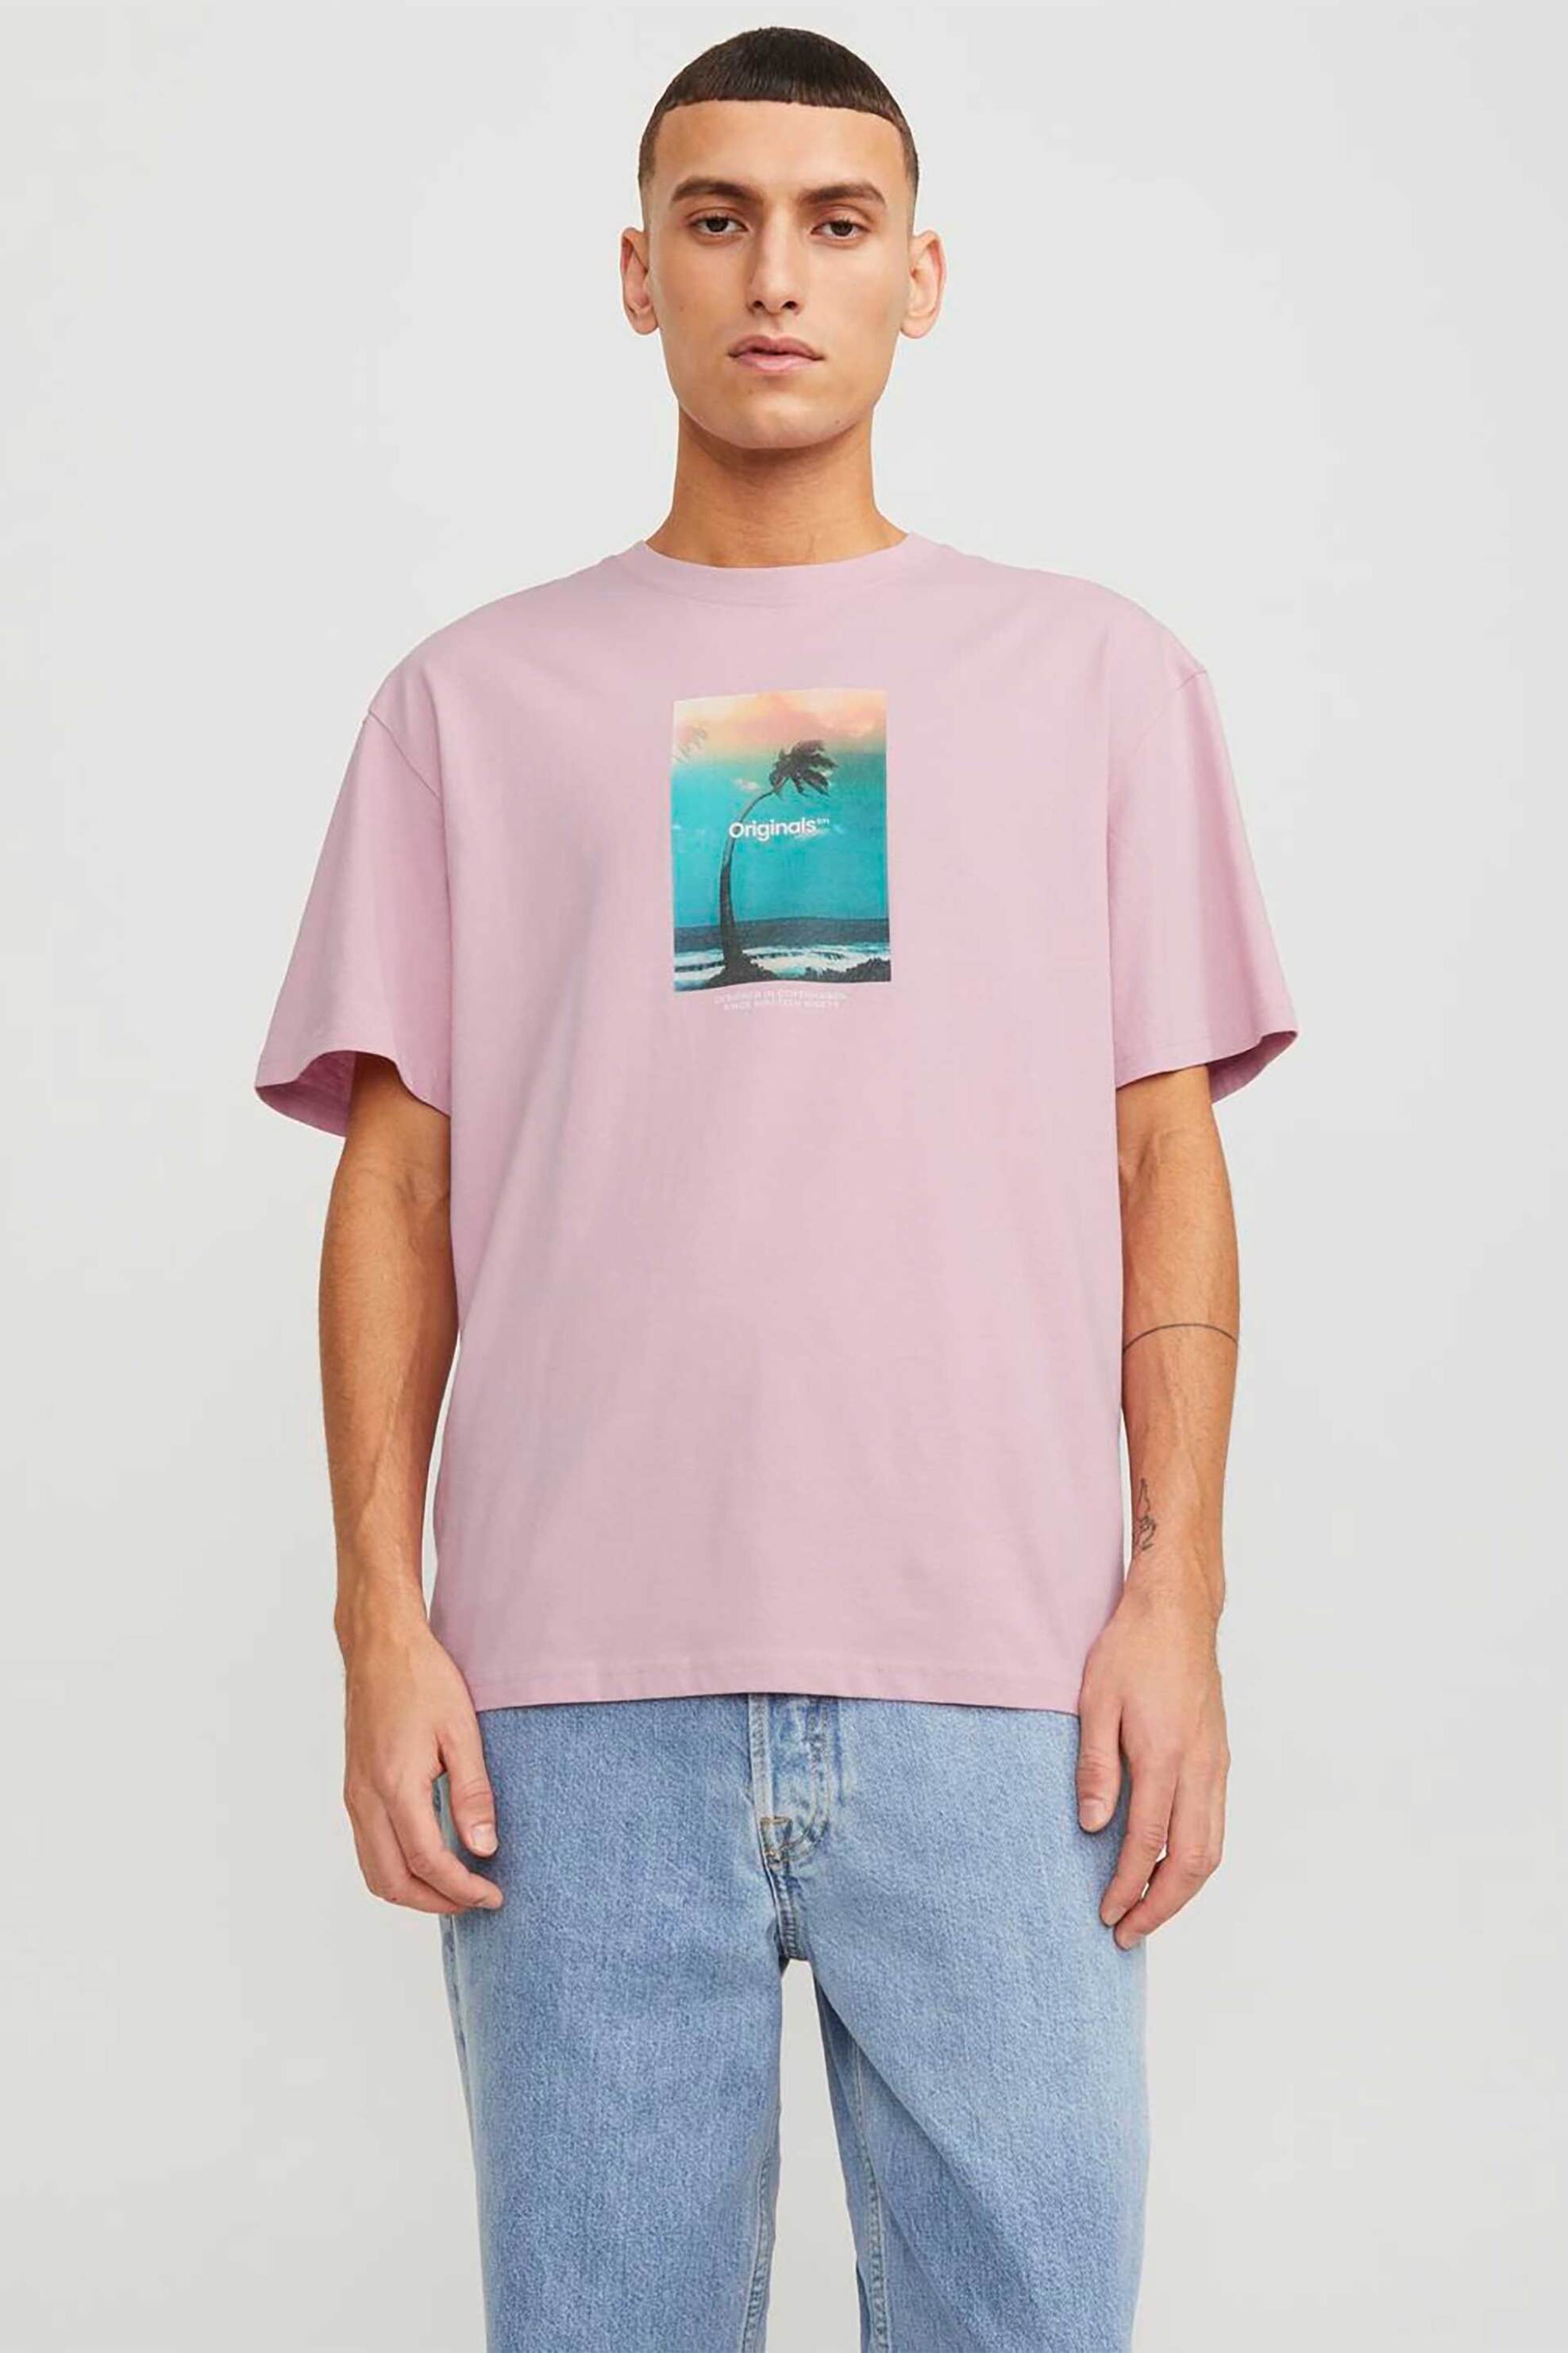 Ανδρική Μόδα > Ανδρικά Ρούχα > Ανδρικές Μπλούζες > Ανδρικά T-Shirts JACK & JONES ανδρικό T-shirt με graphic print Relaxed Fit - 12250421 Ροζ